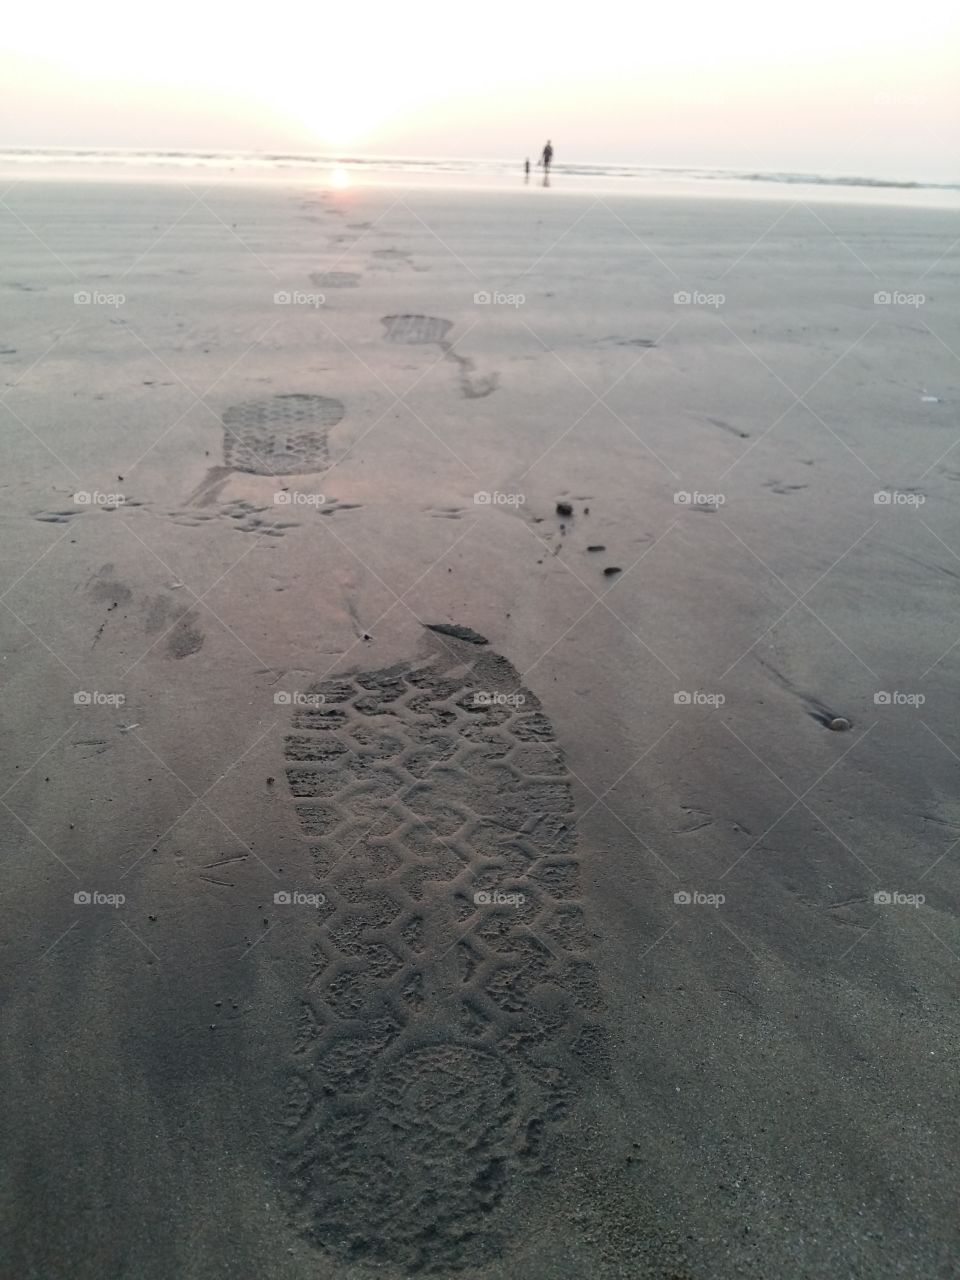 Footprints 
#footprints #foot #impression #sea